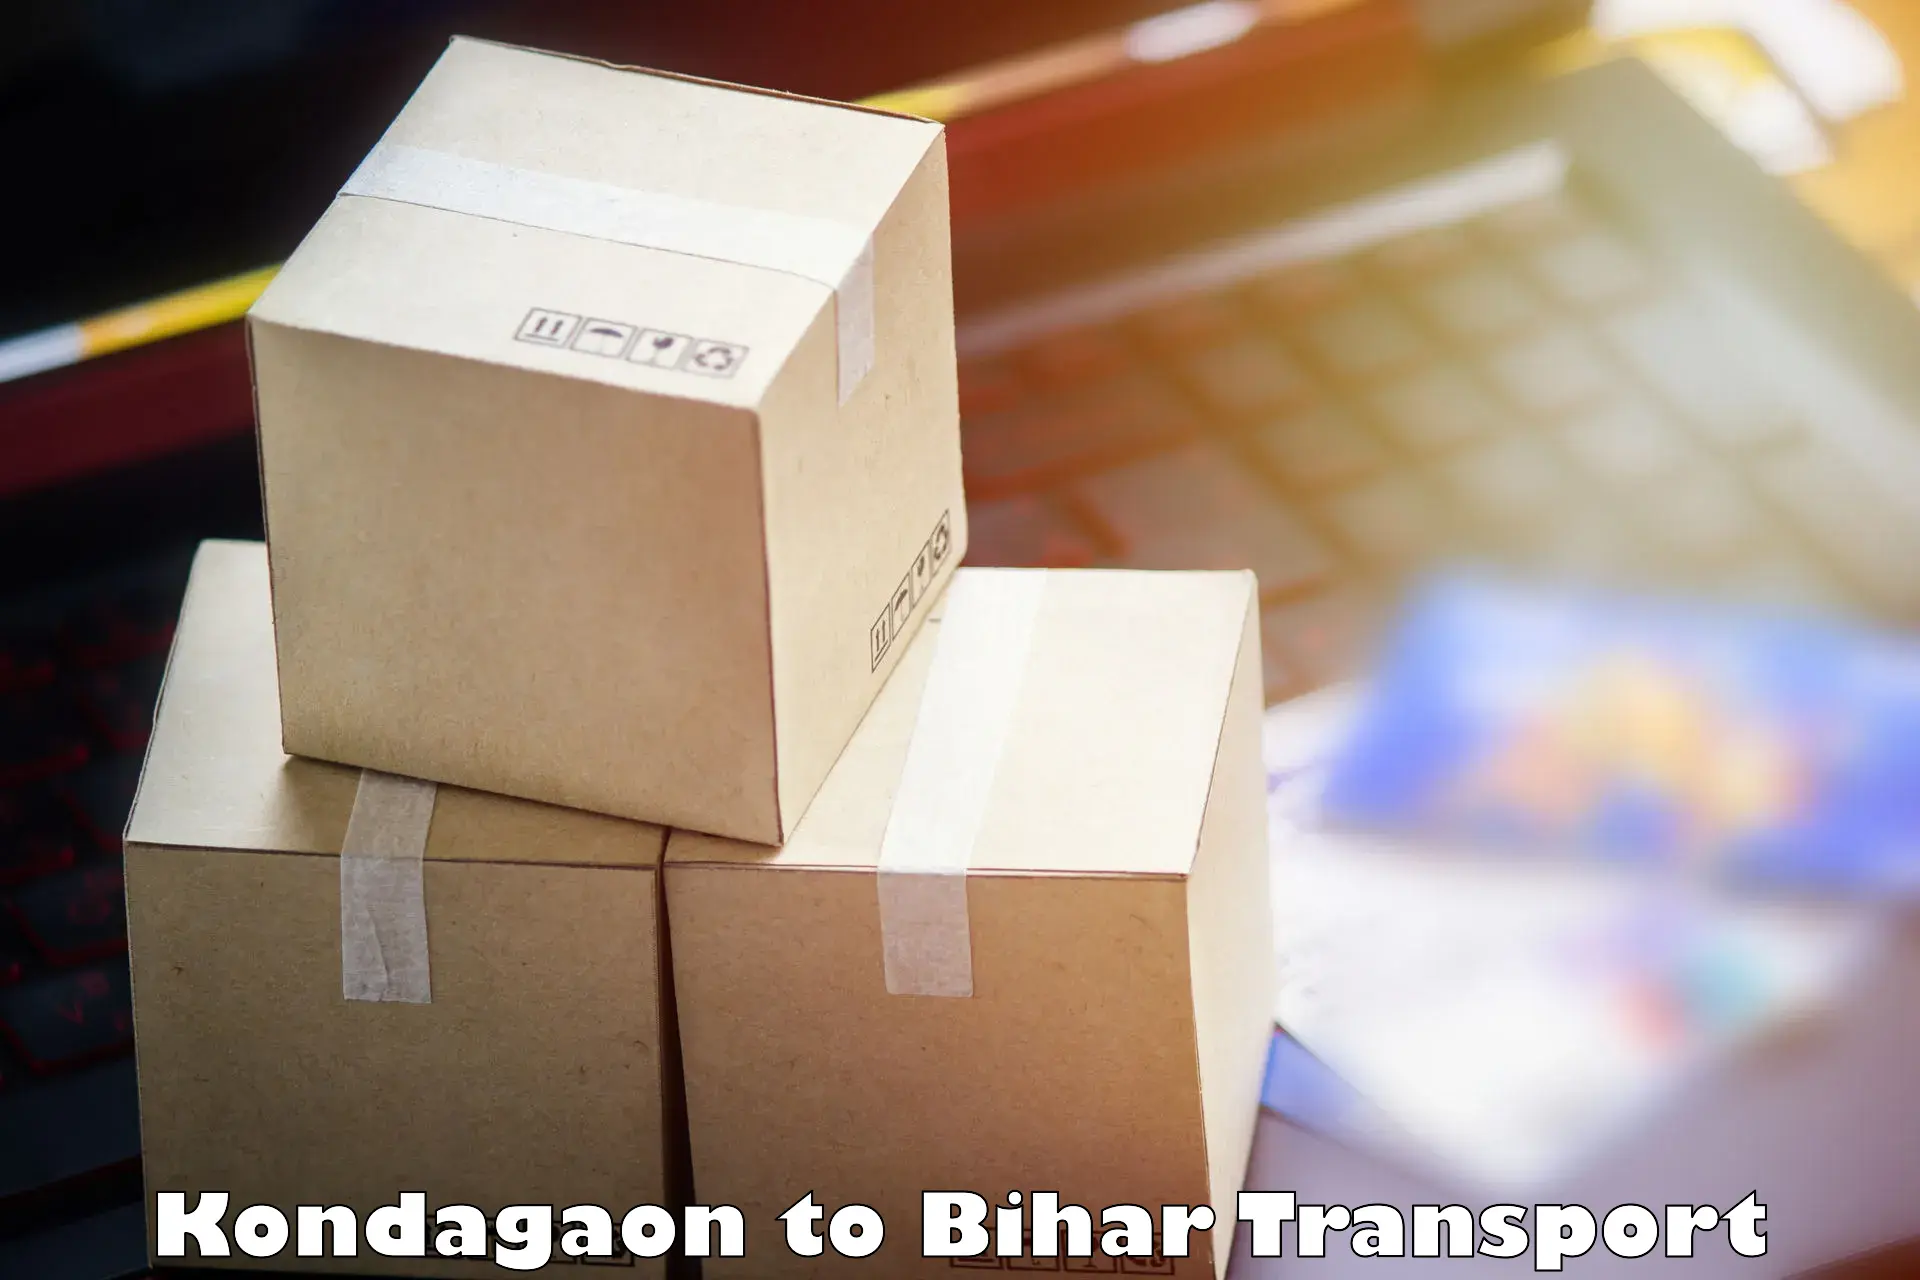 Container transport service Kondagaon to Naugachhia